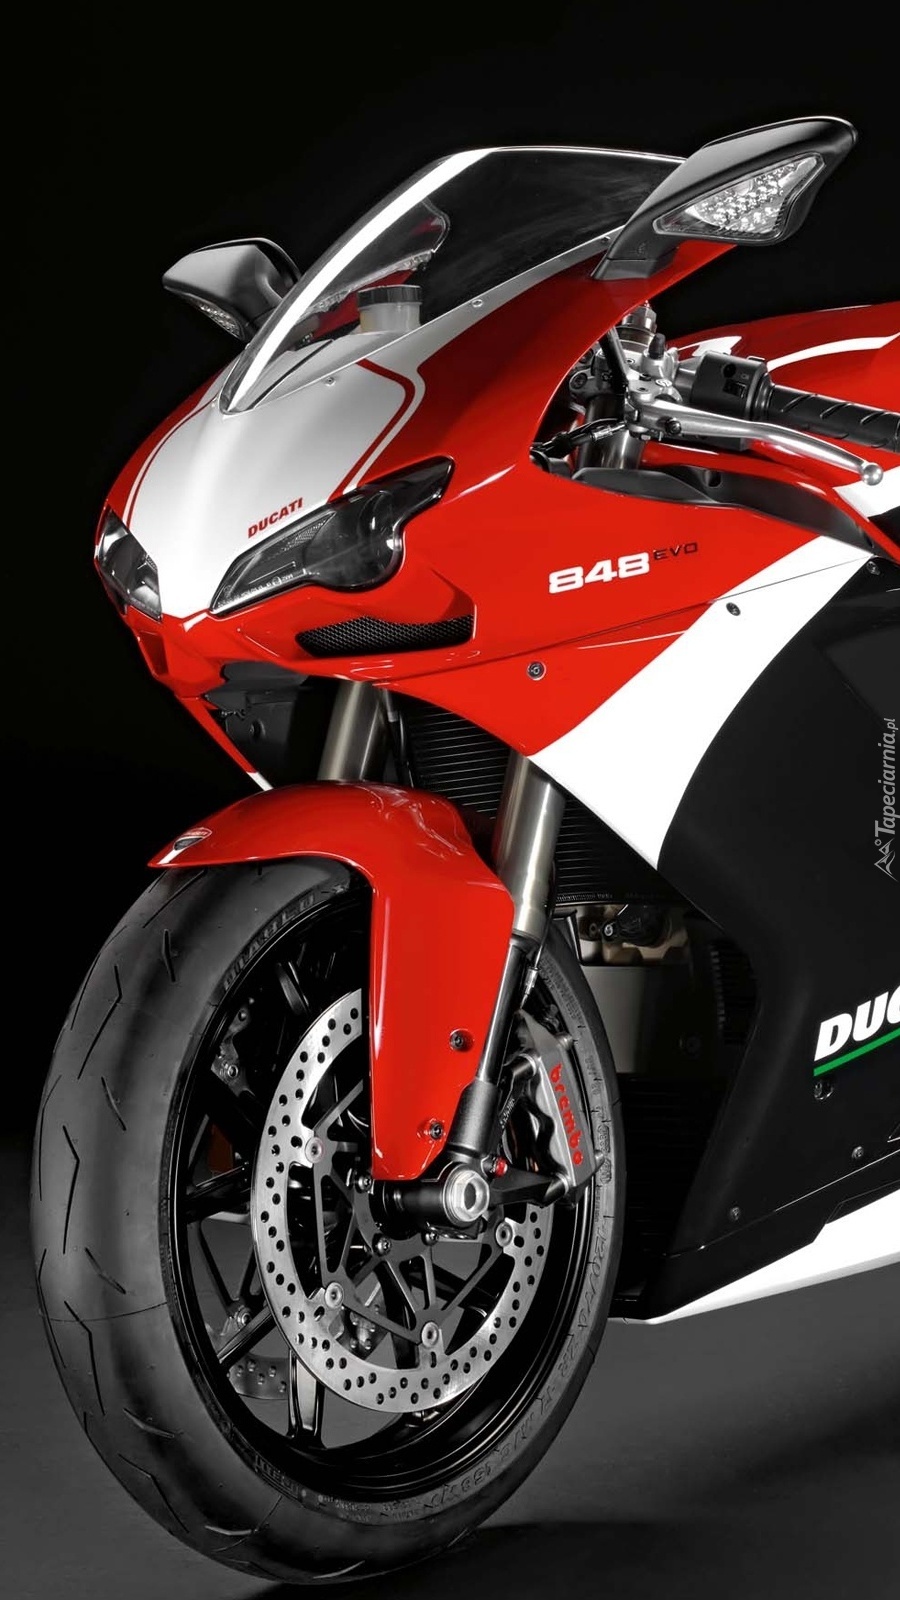 Ducati 848 EVO Course Special Edition